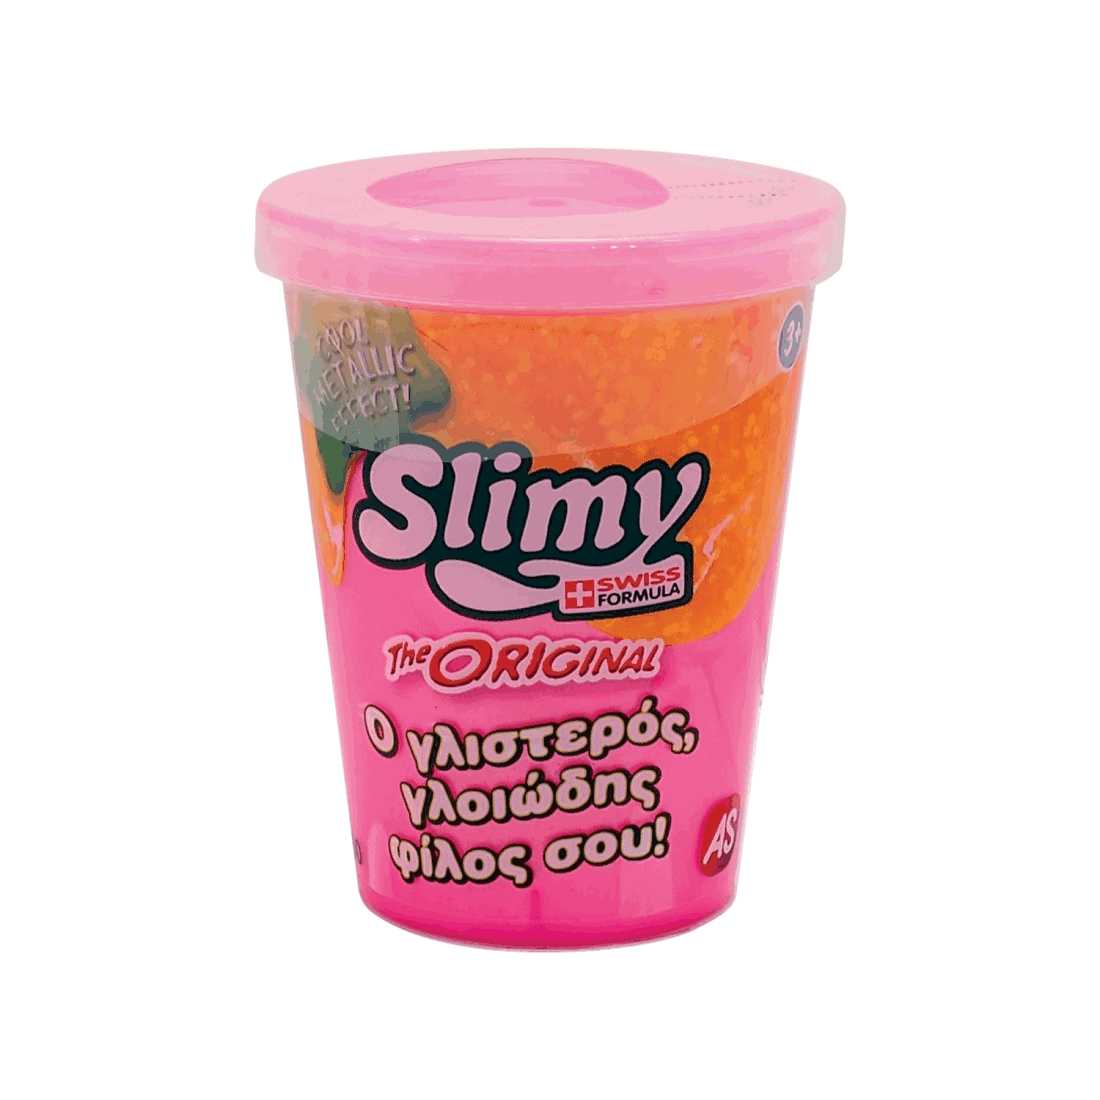 Χλαπατσα Original Slimy Metallic - Ροζ